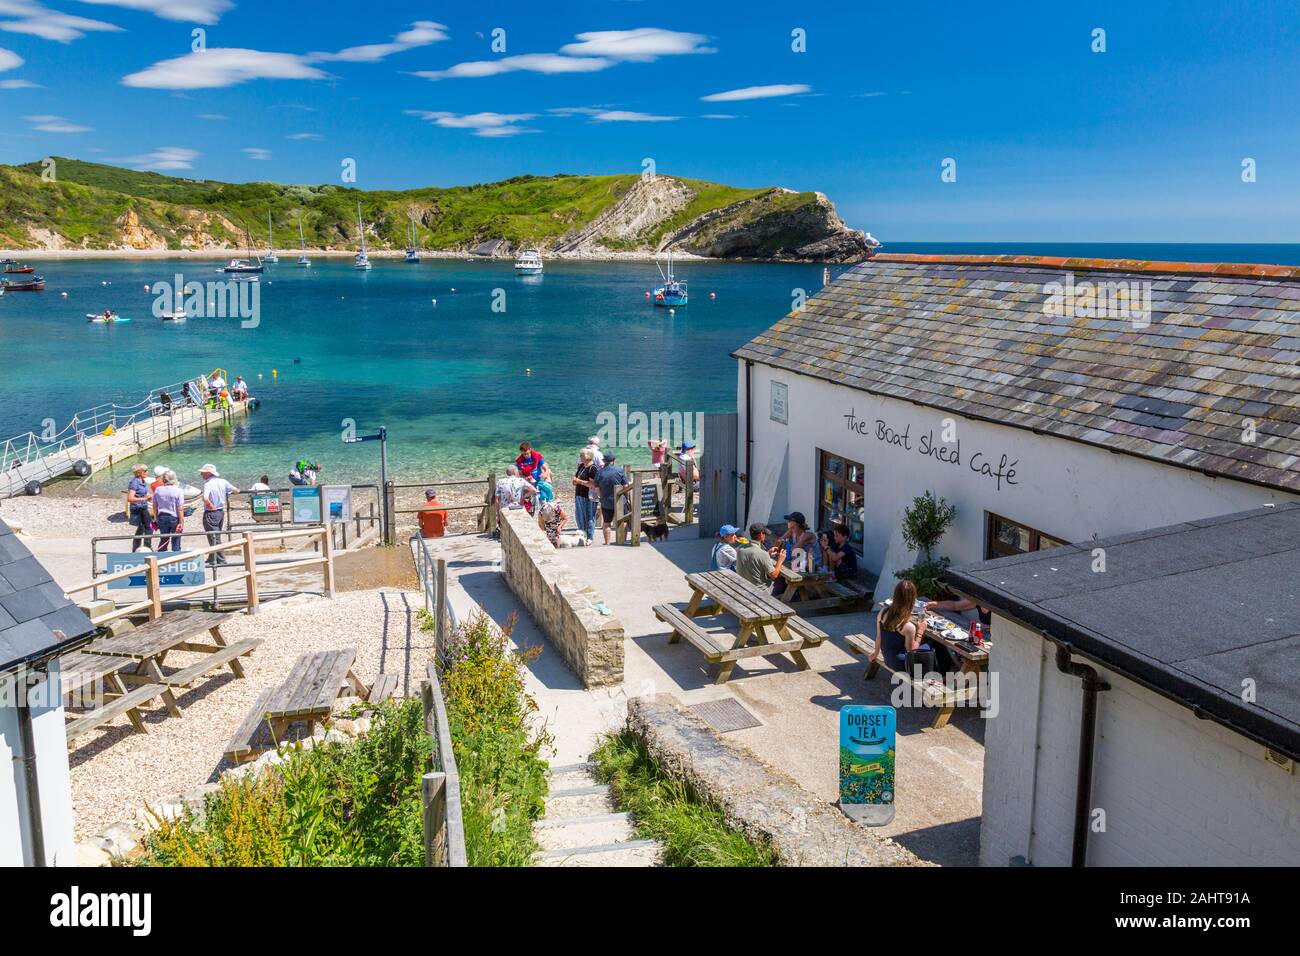 The Boat Shed Cafe overlooks Lulworth Cove on Dorset's Jurassic Heritage Coast, England, UK Stock Photo